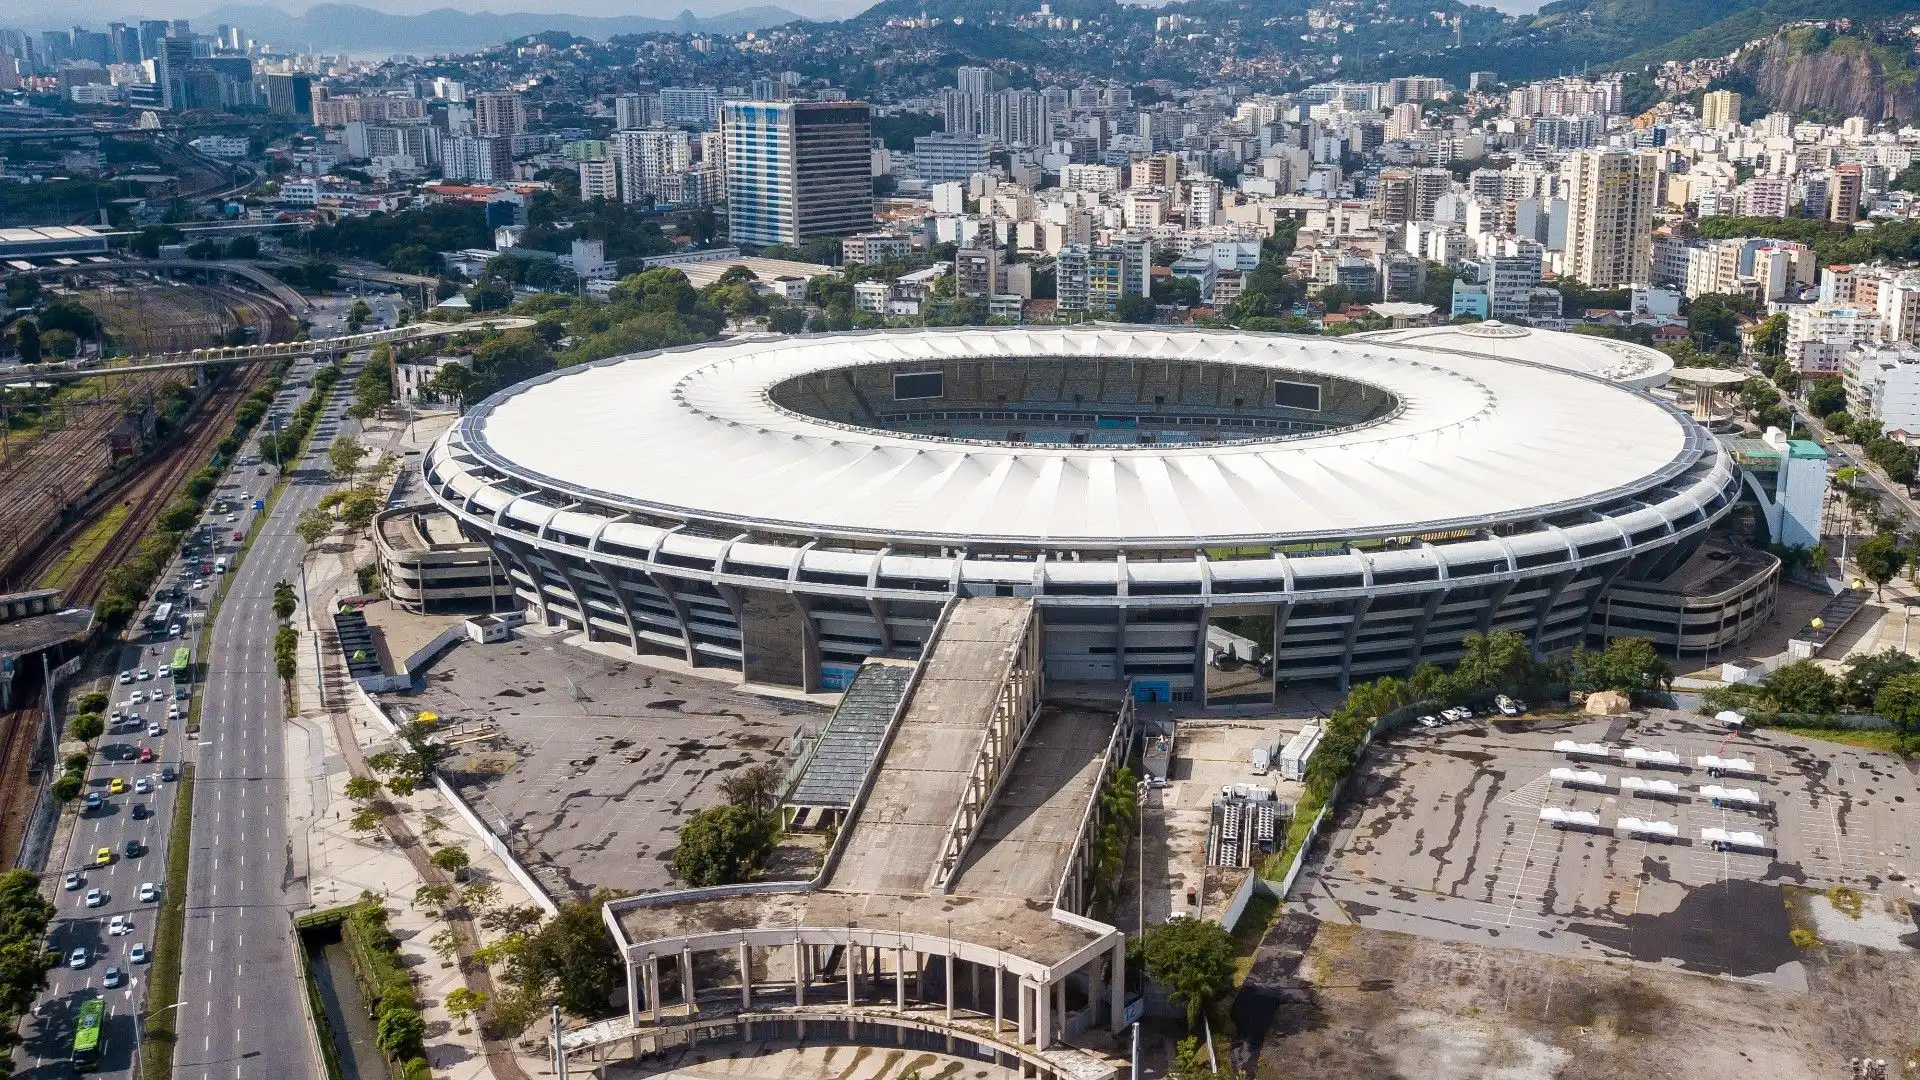 Maracanã - Rio de Janeiro, Brasile: lo stadio più famoso del Brasile, noto per la sua capacità di ospitare oltre 78.000 spettatori e la sua architettura iconica